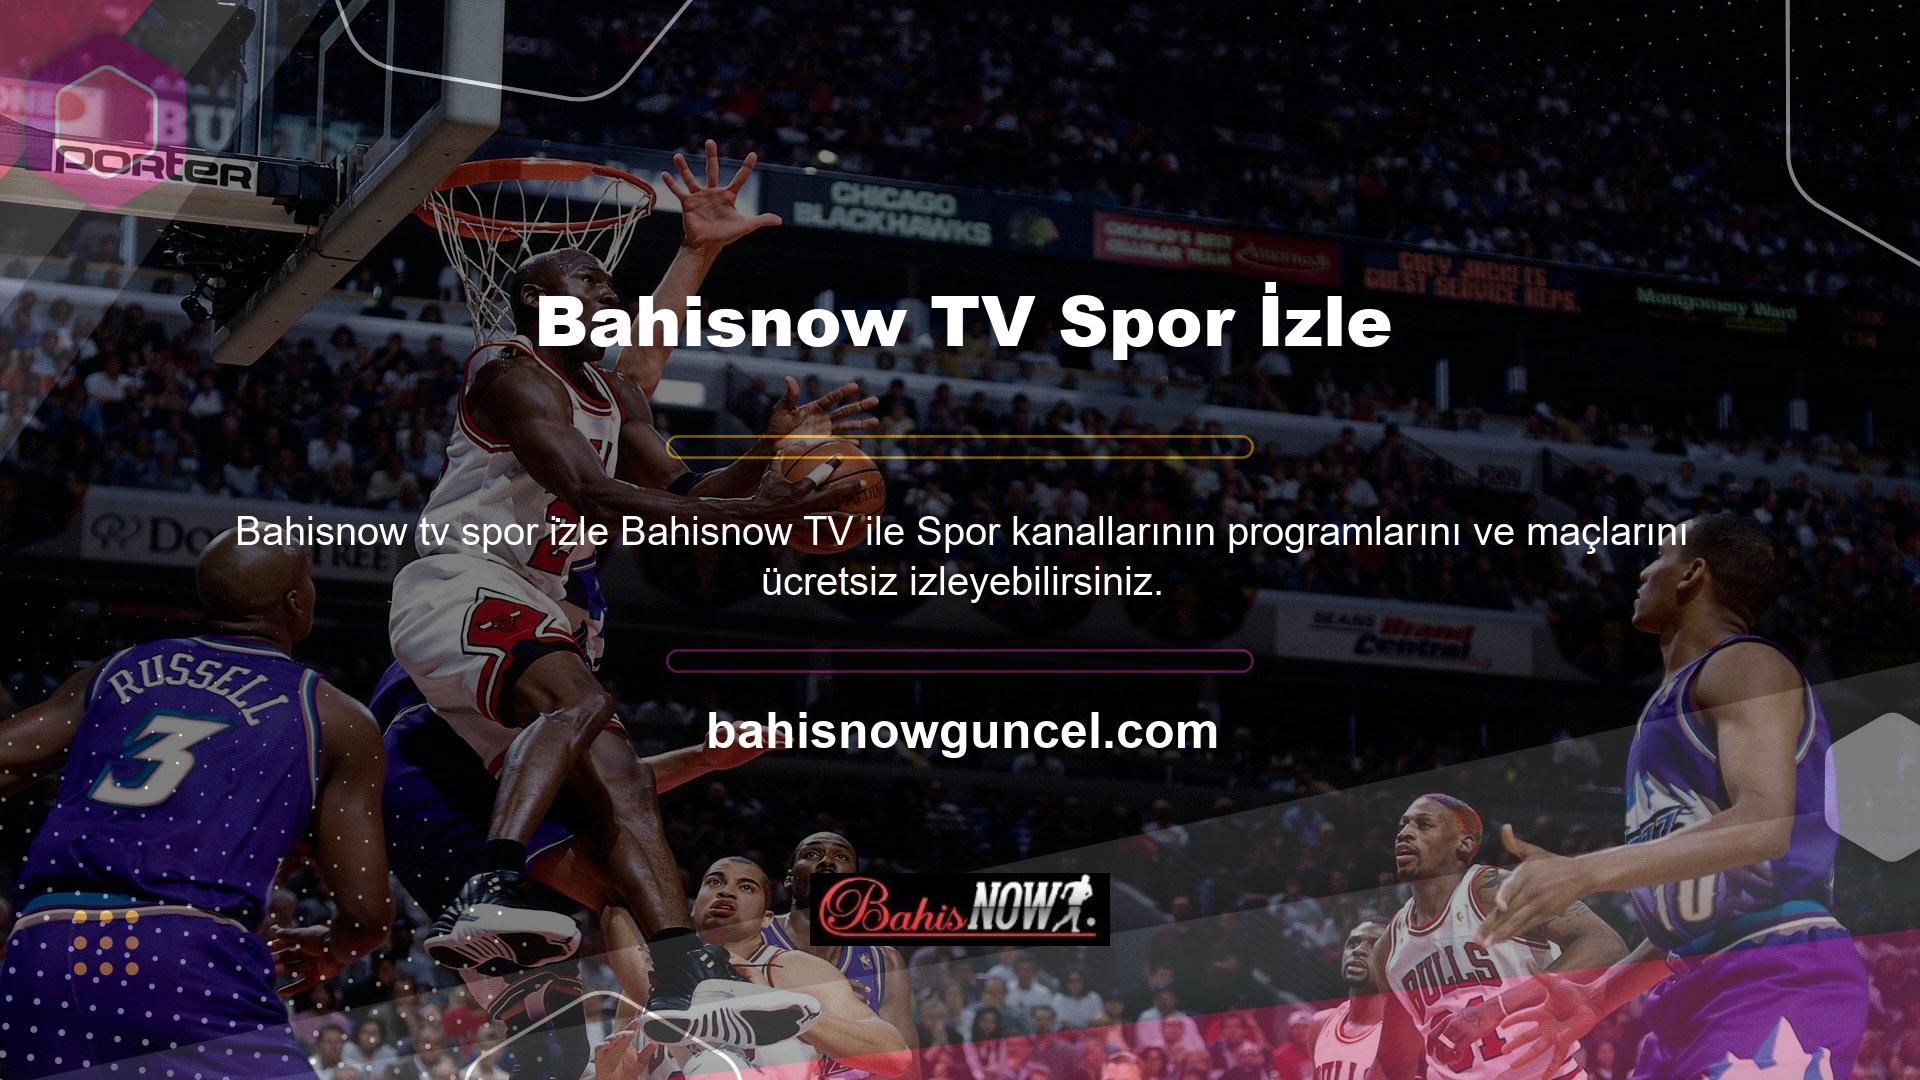 HD kalitesinde maç yayınları, herhangi bir gecikme veya kesinti olmaksızın Bahisnow TV'de sizlerle buluşacak